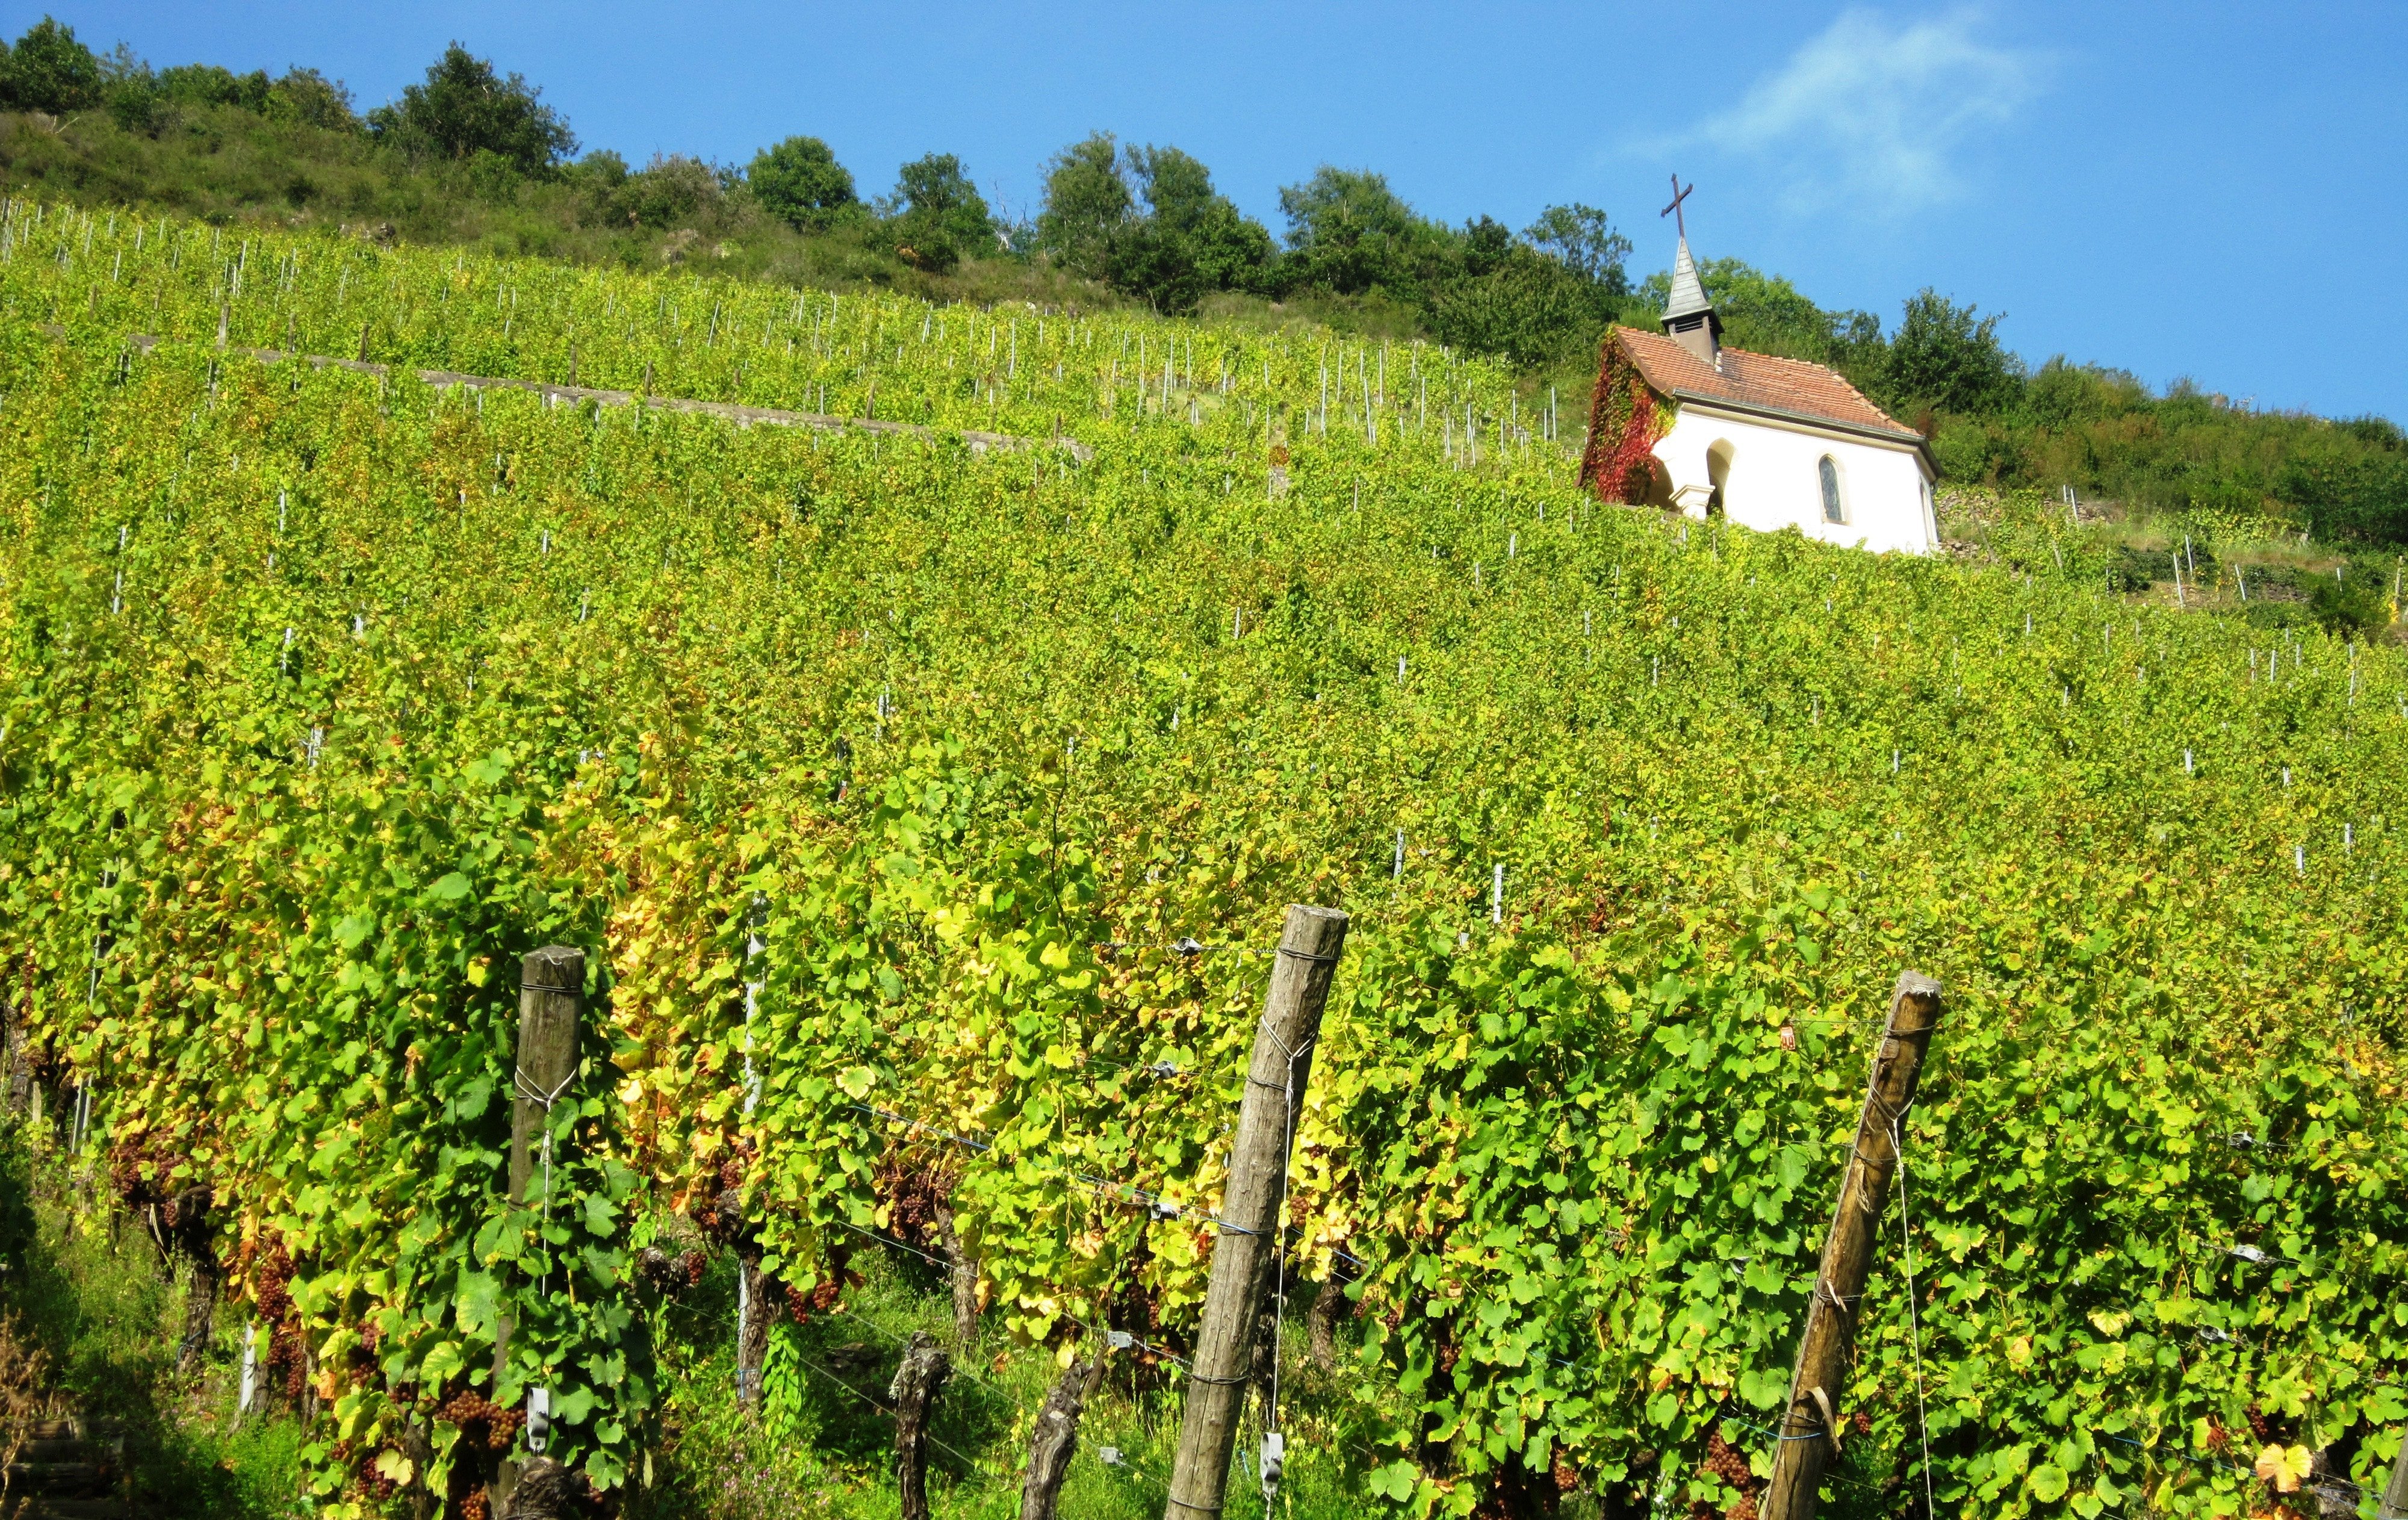 andreas fickl 1398038 unsplash.jpg?resize=412,232 - Découvrez les 5 plus beaux villages sur la route des vins d'Alsace